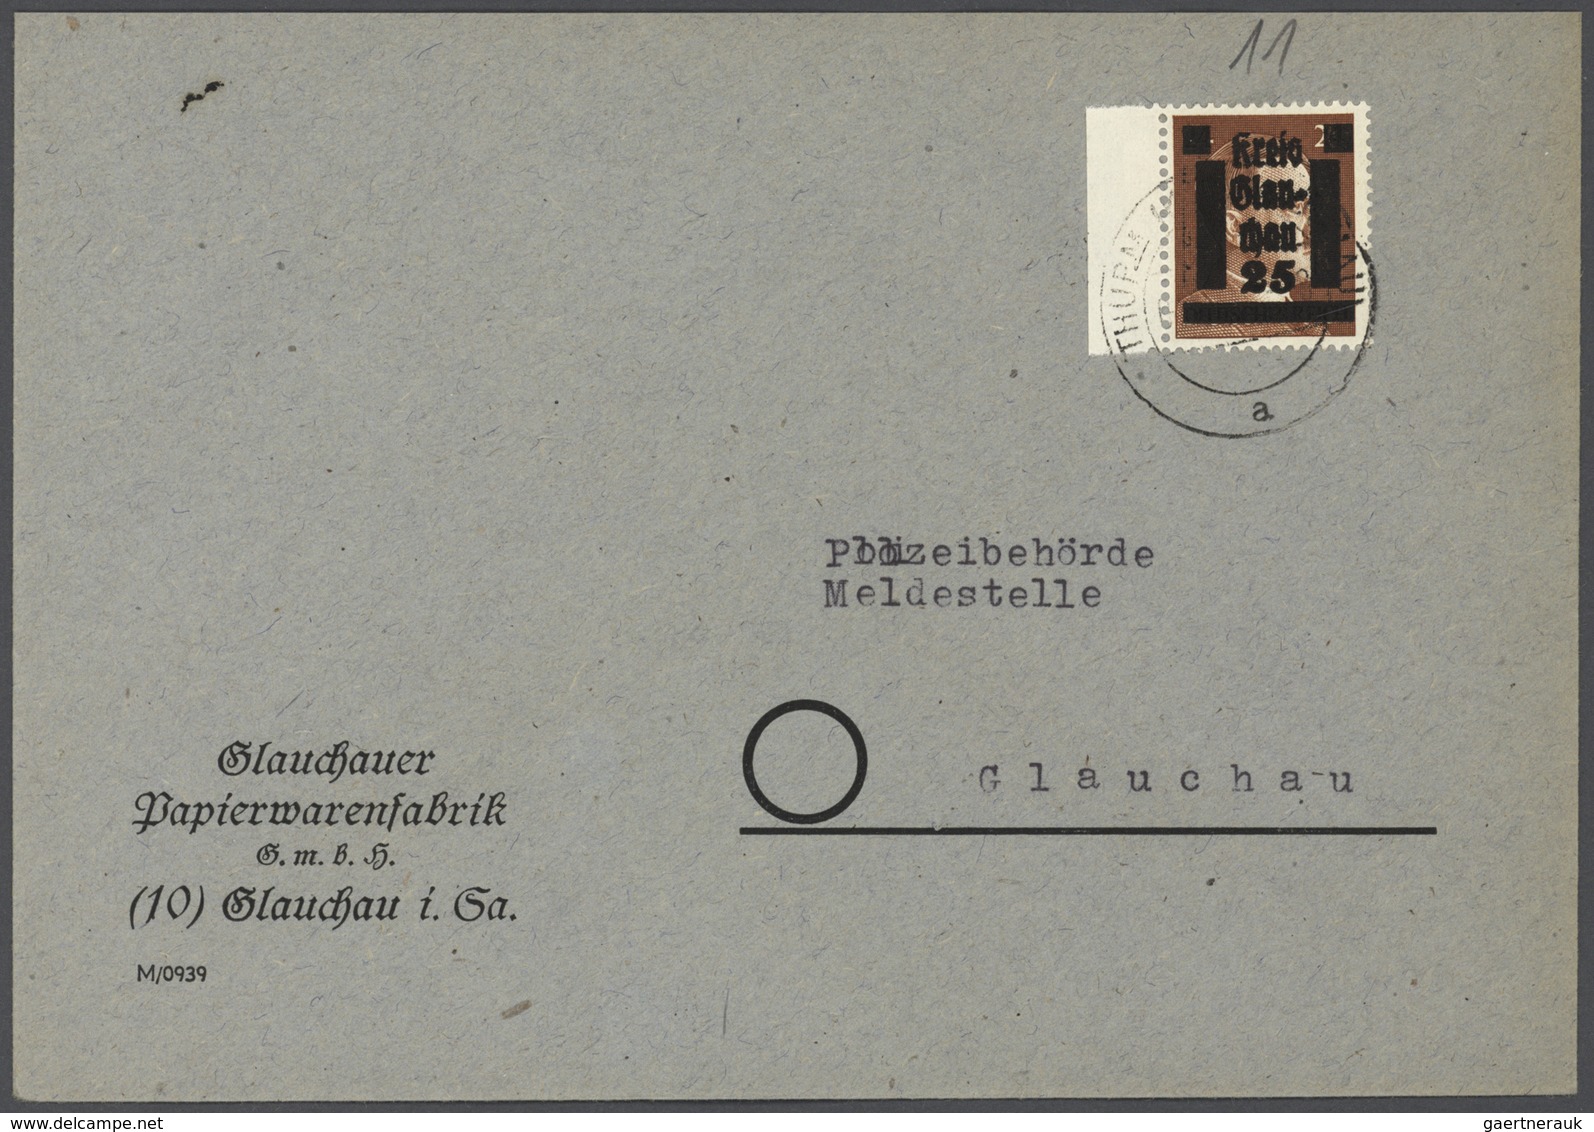 Deutsche Lokalausgaben ab 1945: 1945, Vordruck-Sammlung, in Teilbereichen recht gut besetzt, zahlrei